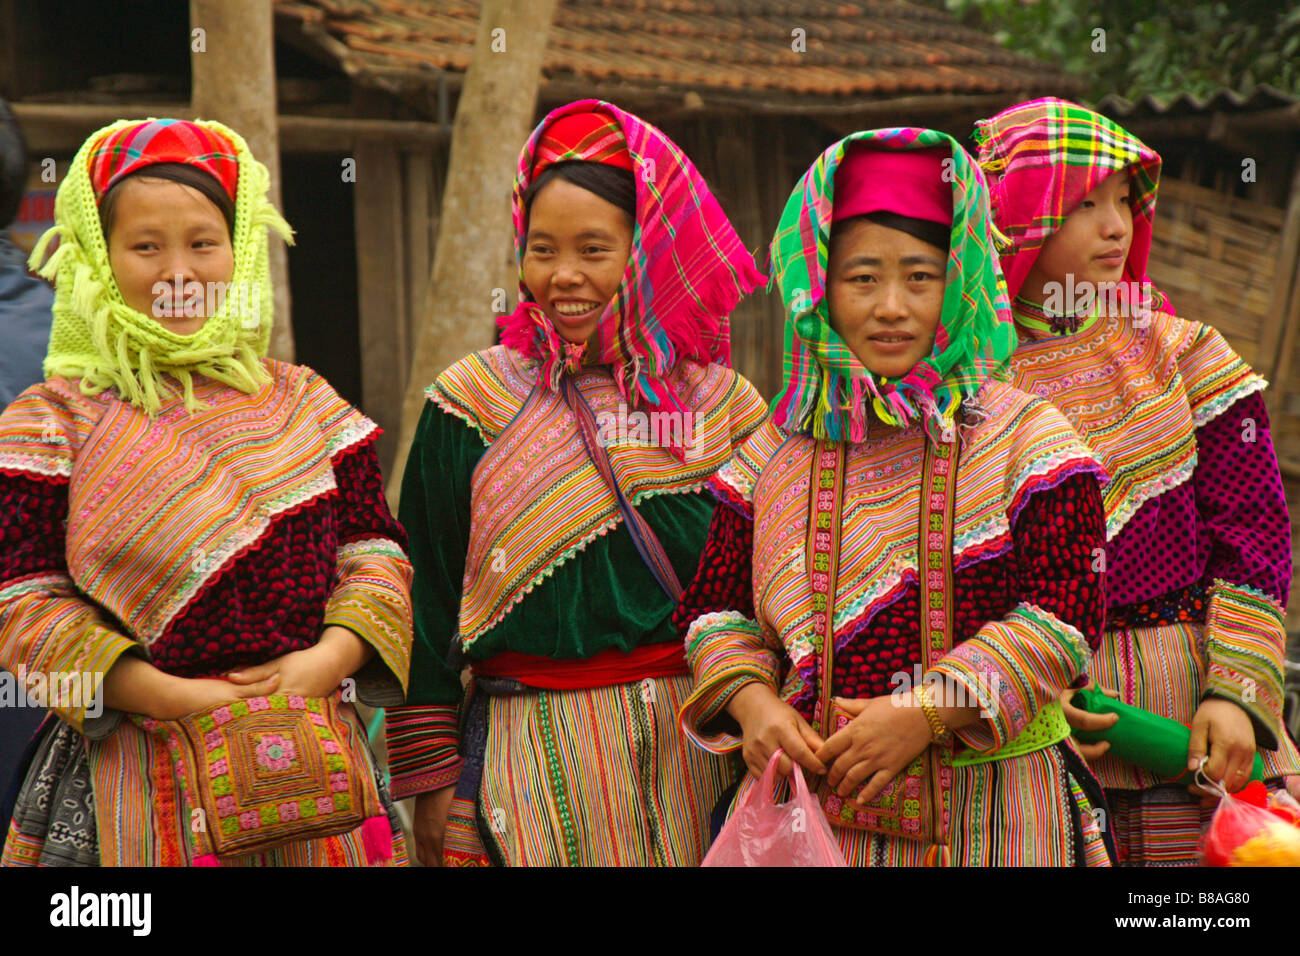 Hmong Blumenmadchen In Traditioneller Kleidung Sapa Vietnam Stockfotografie Alamy